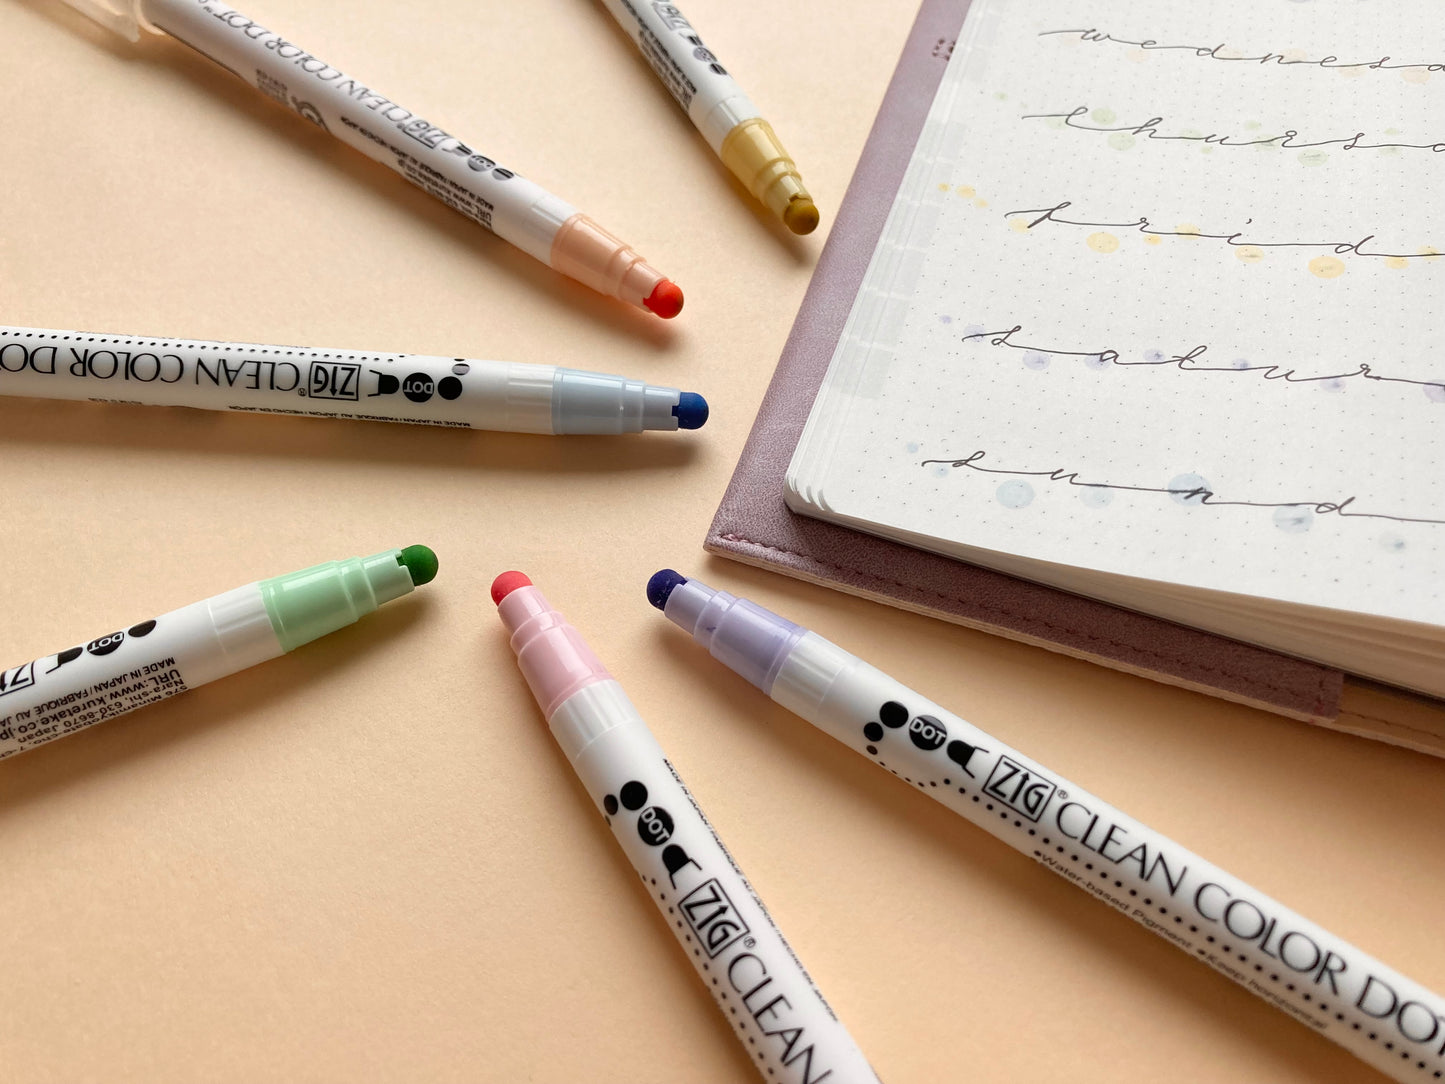 Kuretake ZIG Clean Color Dot Pen Mild Colors 6 set